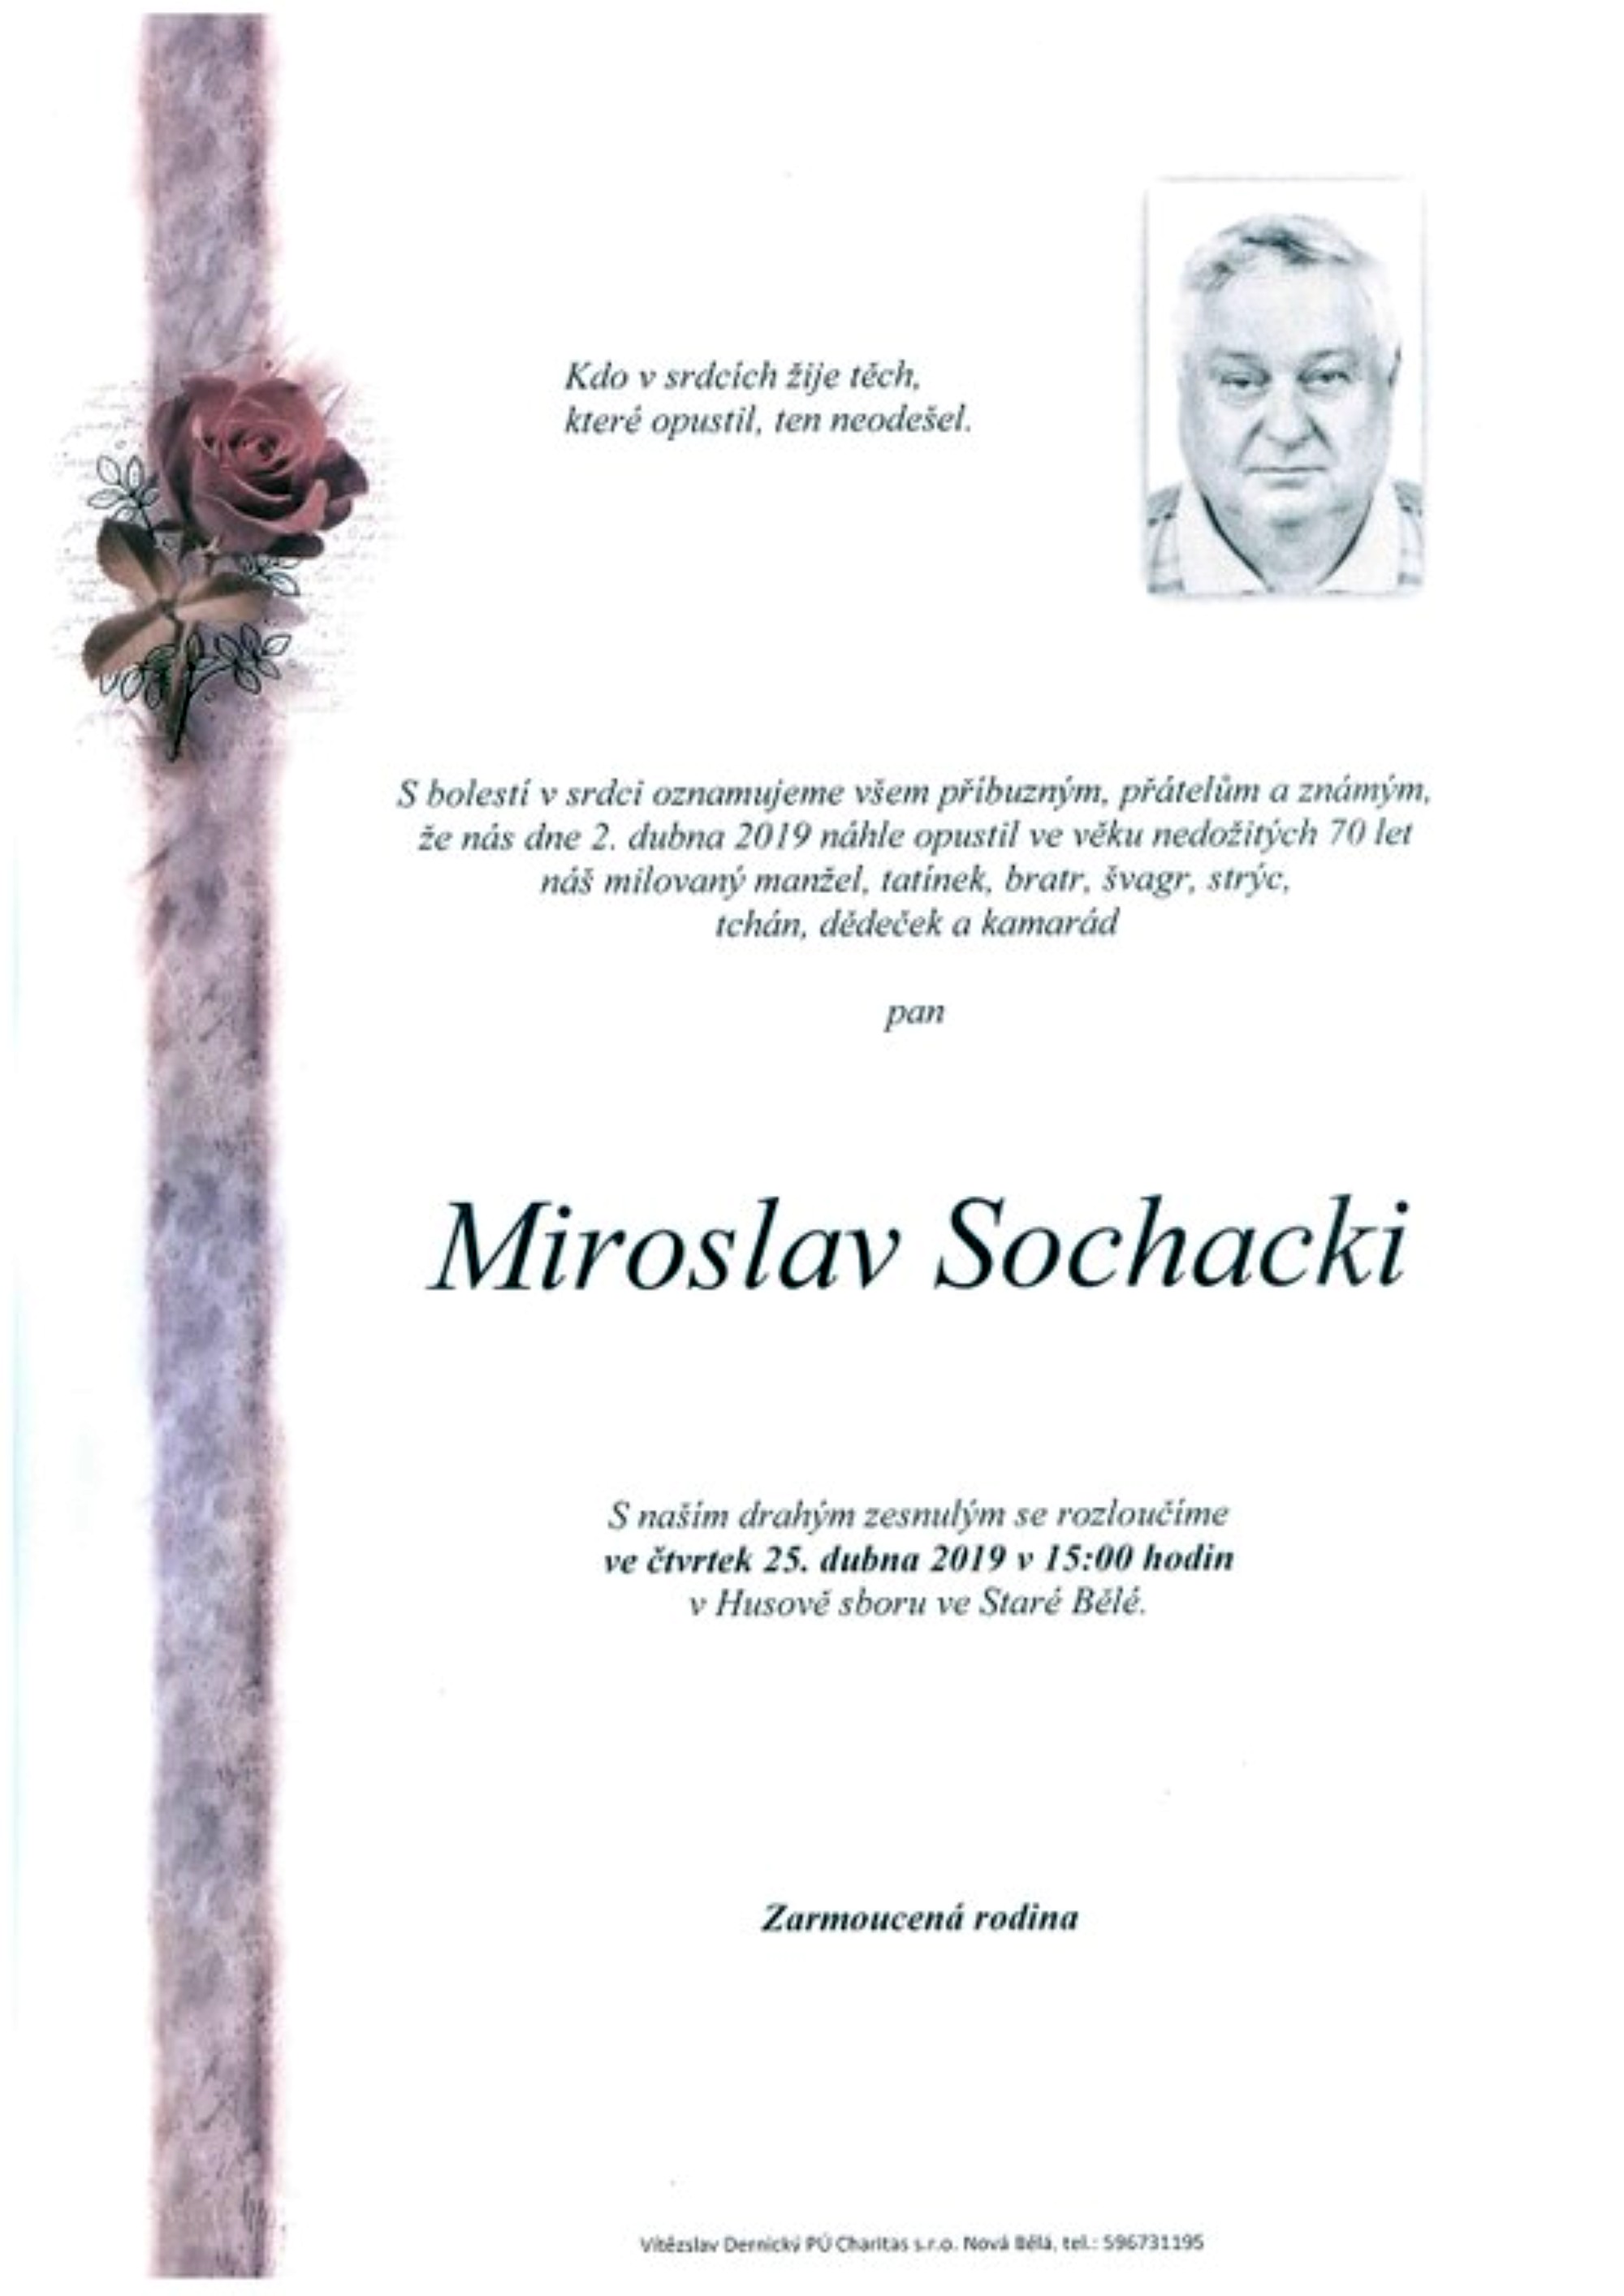 Miroslav Sochacki